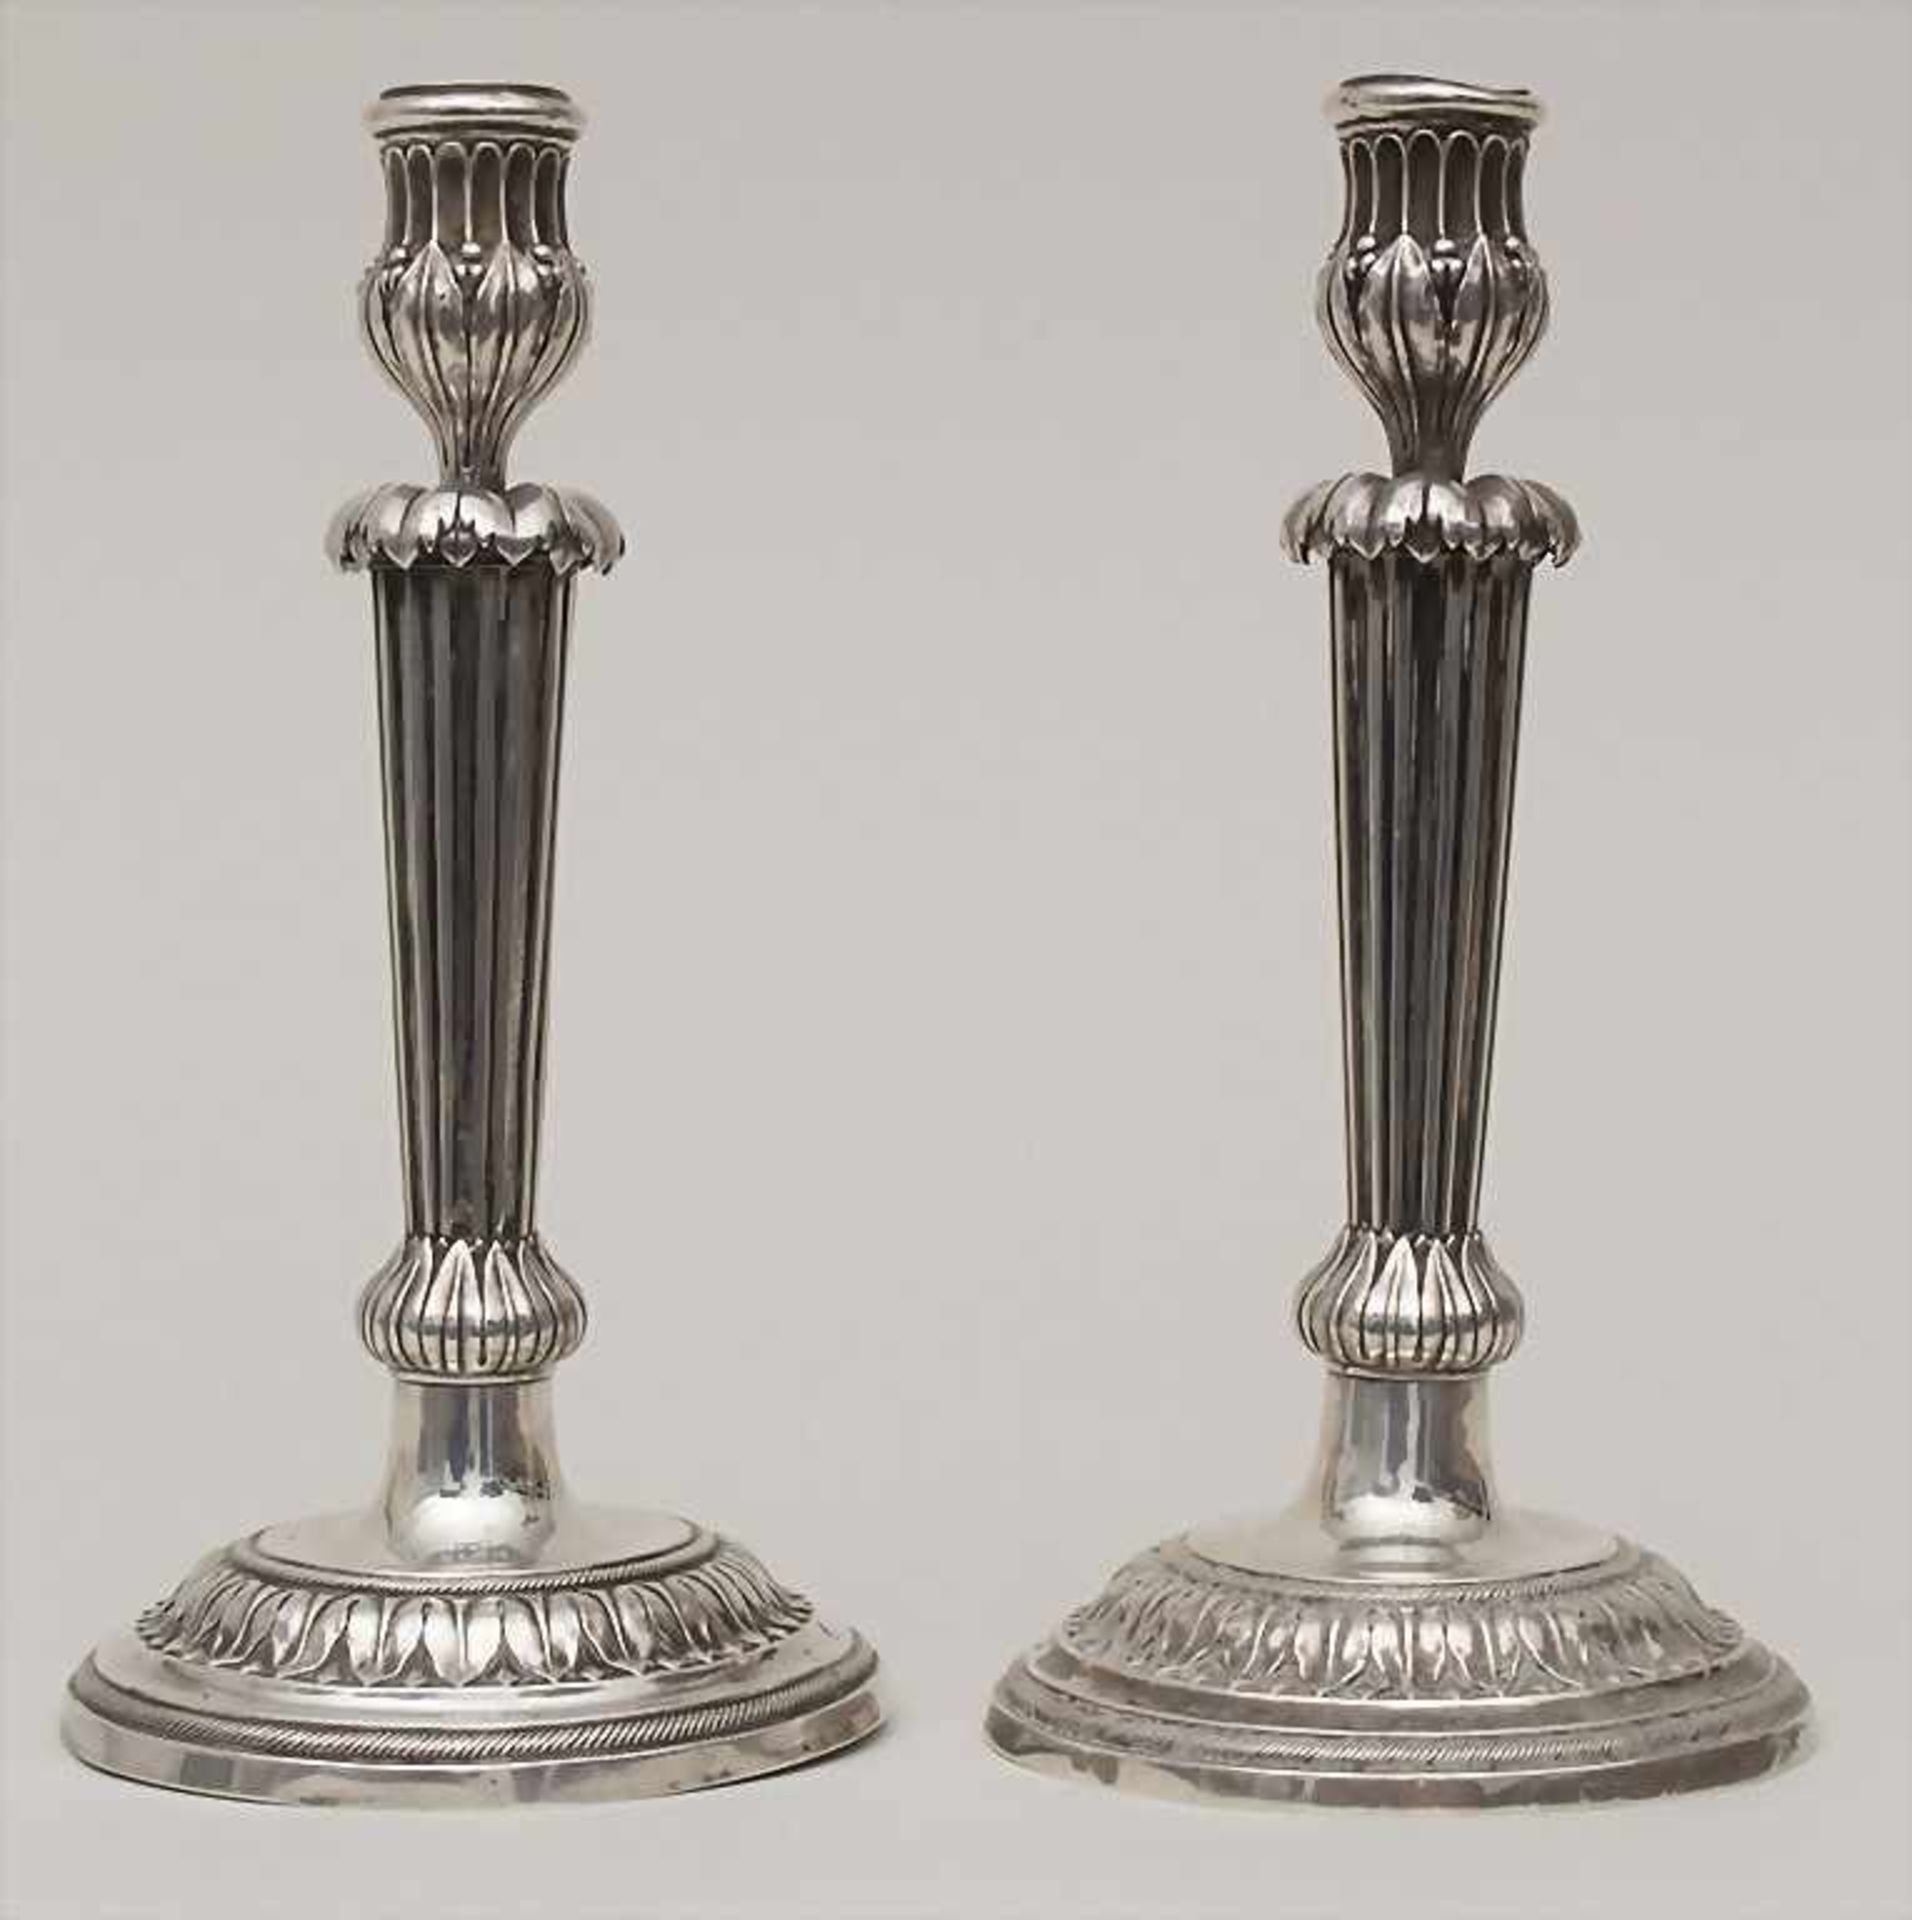 Paar Kerzenleuchter / A pair of silver candlesticks, Johannes Baptistus Verbercht, Antwerpen /